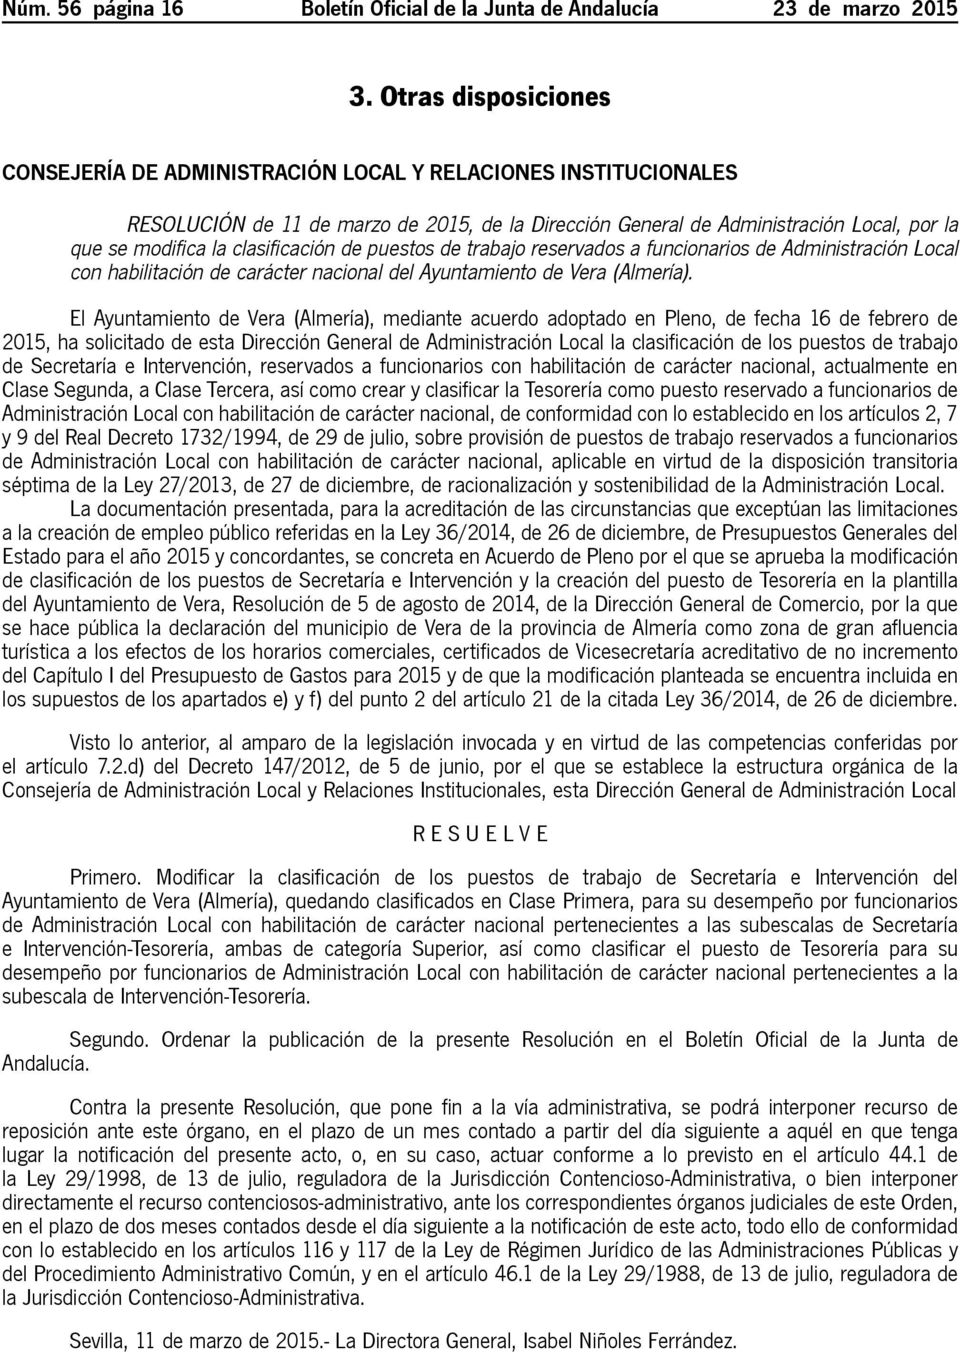 clasificación de puestos de trabajo reservados a funcionarios de Administración Local con habilitación de carácter nacional del Ayuntamiento de Vera (Almería).